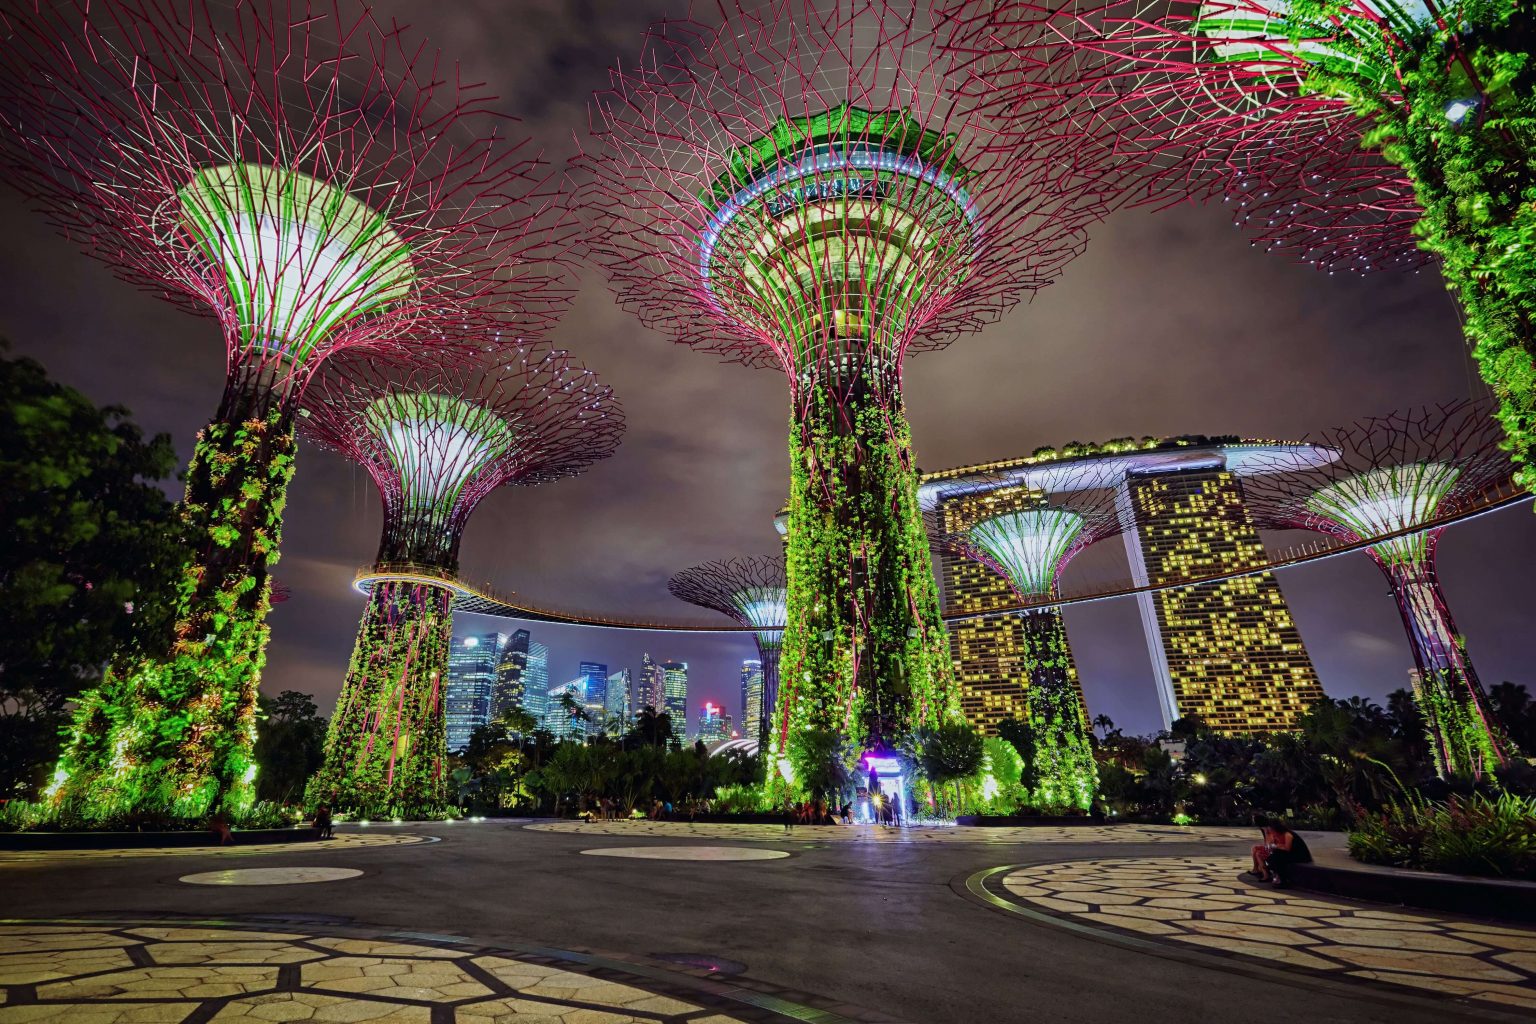 Tempat Wisata di Singapore yang Hits & Instagramable